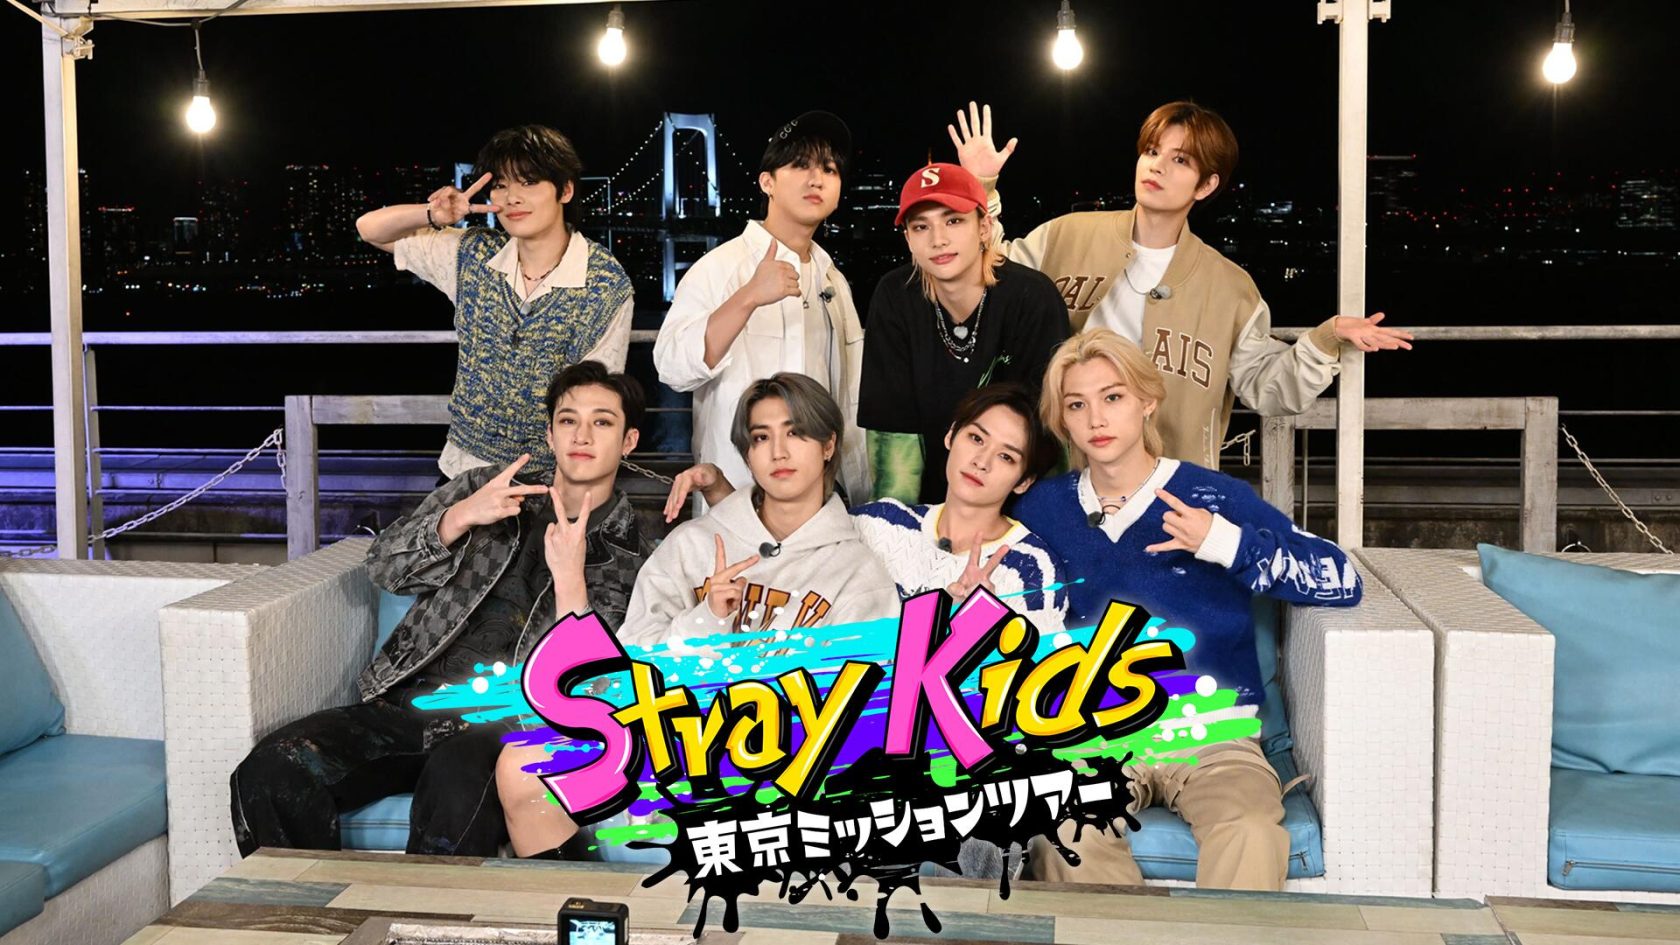 テレビ朝日「Stray Kids東京ミッションツアー」第1回がきょう放送